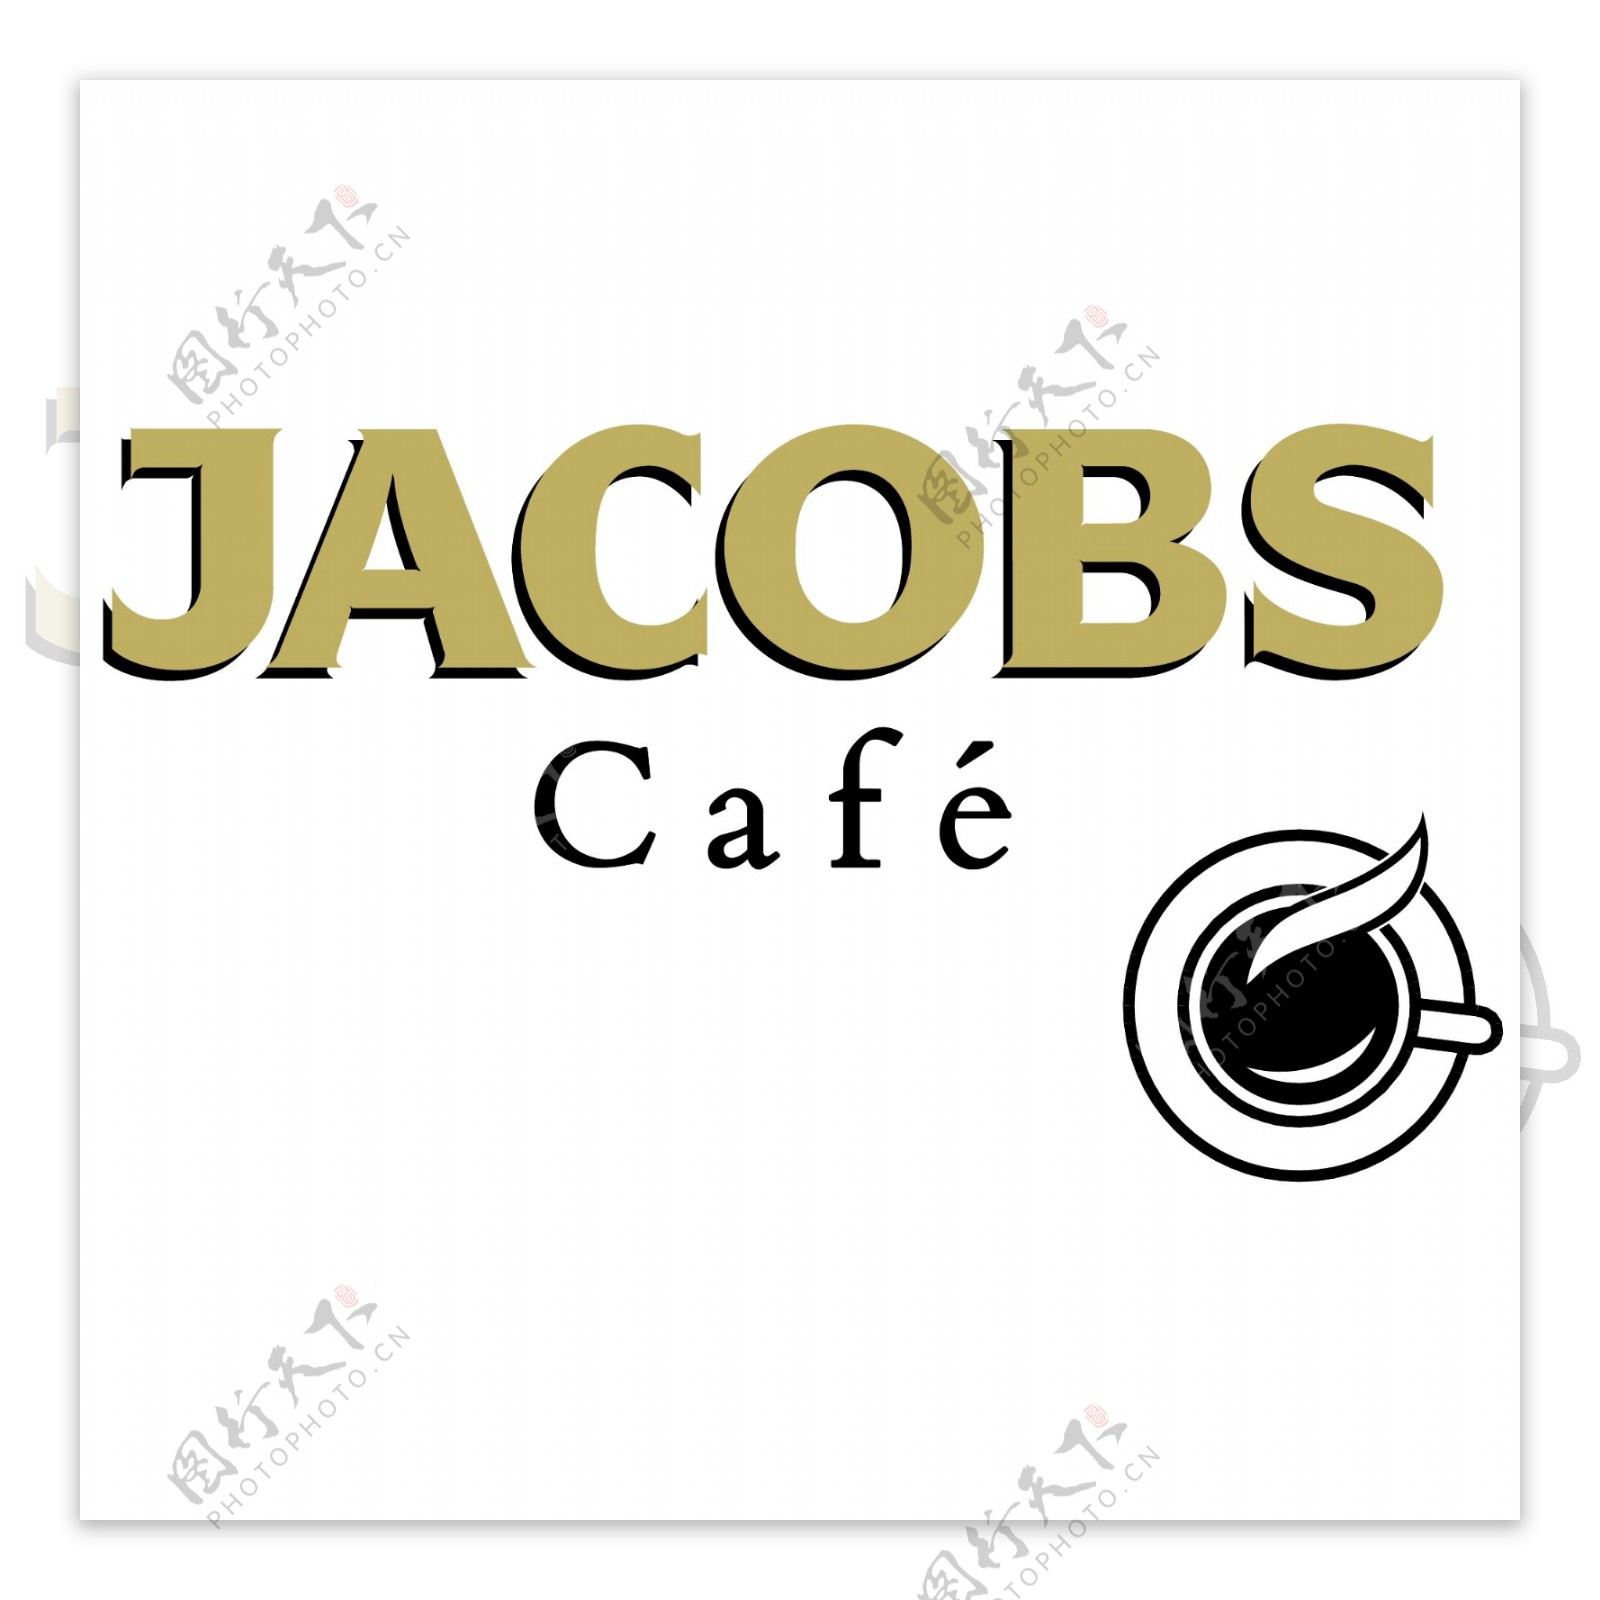 雅可布咖啡馆